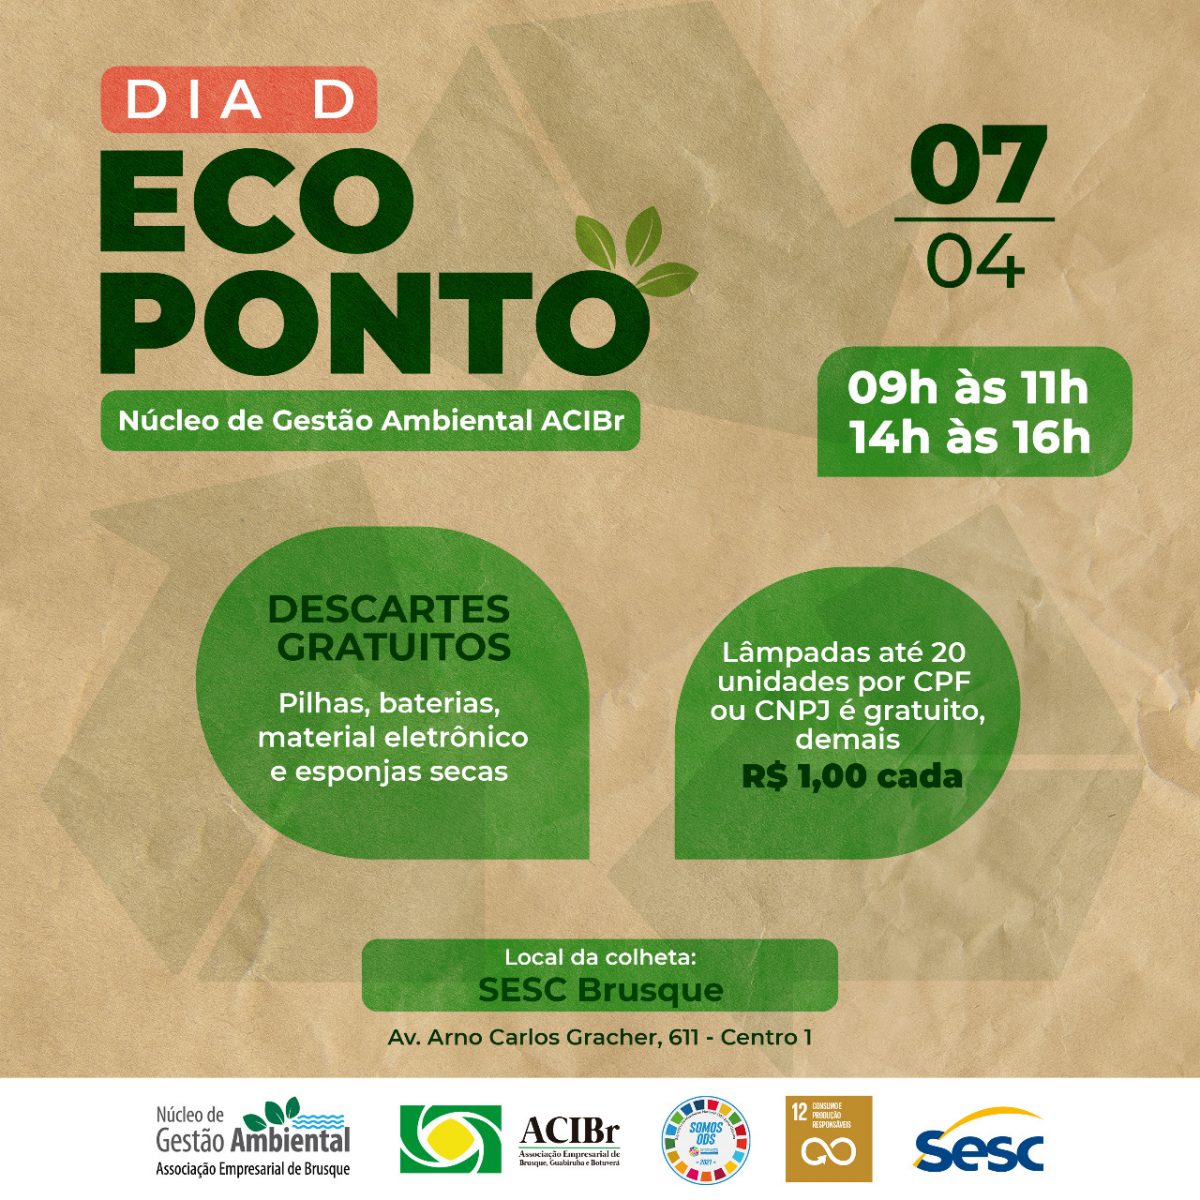 Dia D Eco Ponto estimula descarte correto de eletrônicos, pneus e outros itens